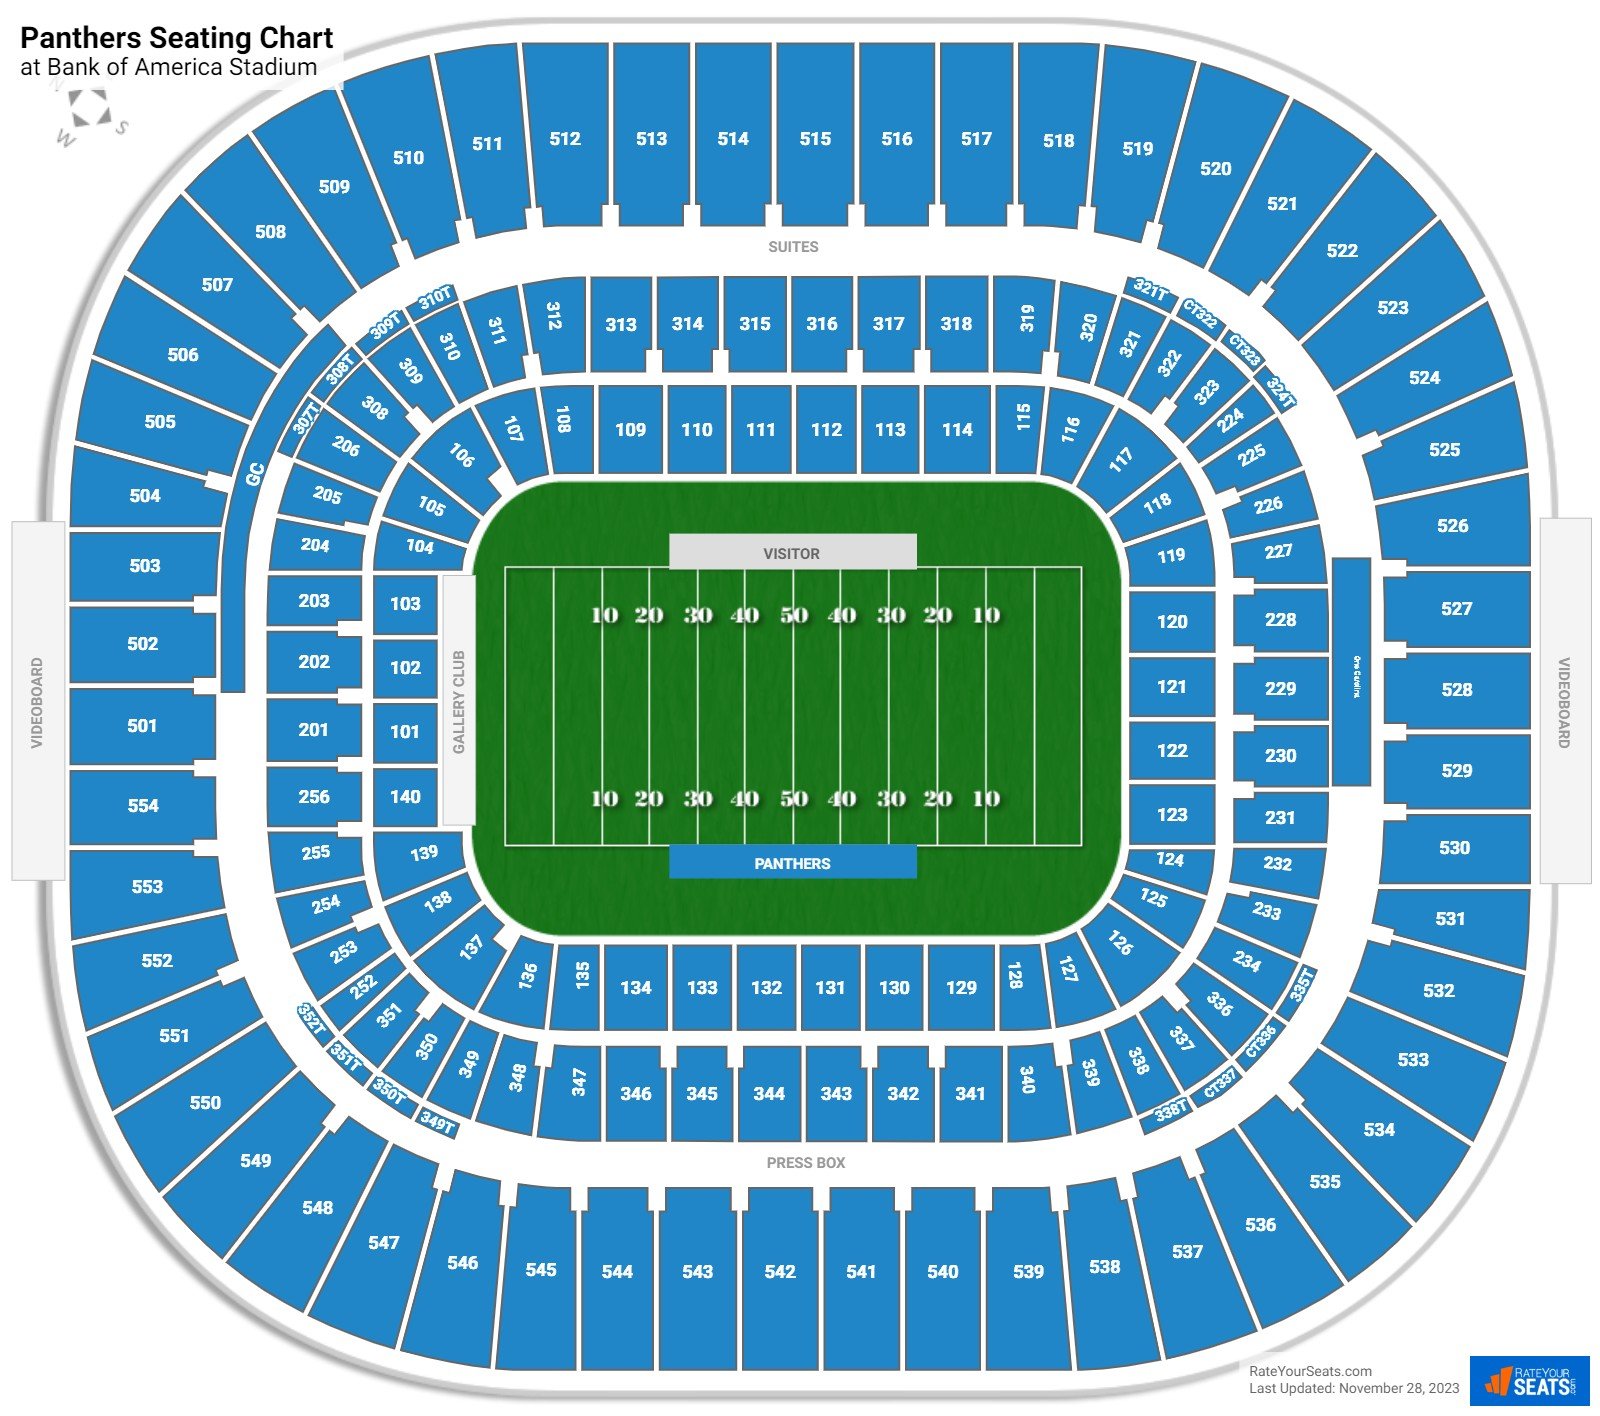 Carolina Panthers Seating Chart at Bank of America Stadium